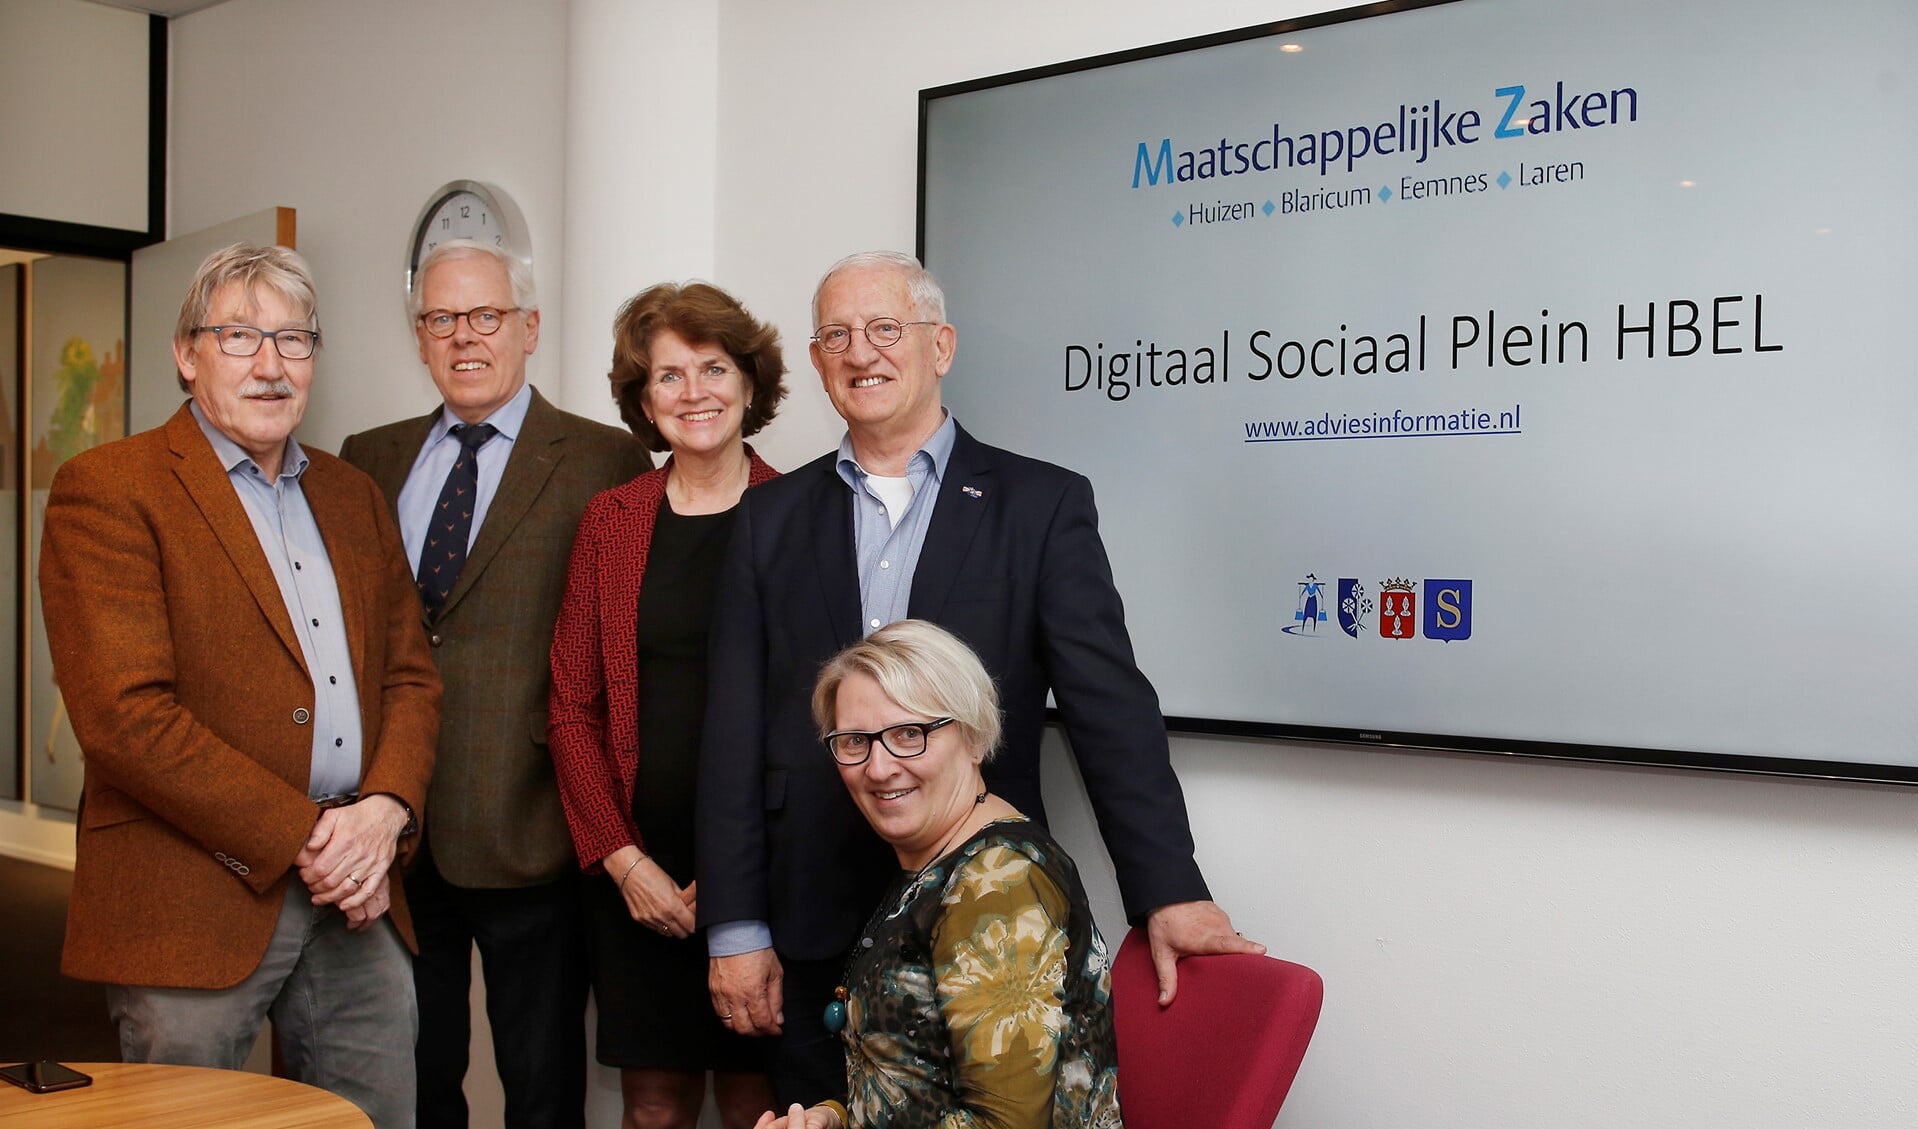 Wethouders Ben Lüken, Leen van der Pols, Janny Bakker, Jan den Dunnen en Marianne Verhage tijdens de presentatie van het vernieuwde Digitaal Sociaal Plein HBEL.